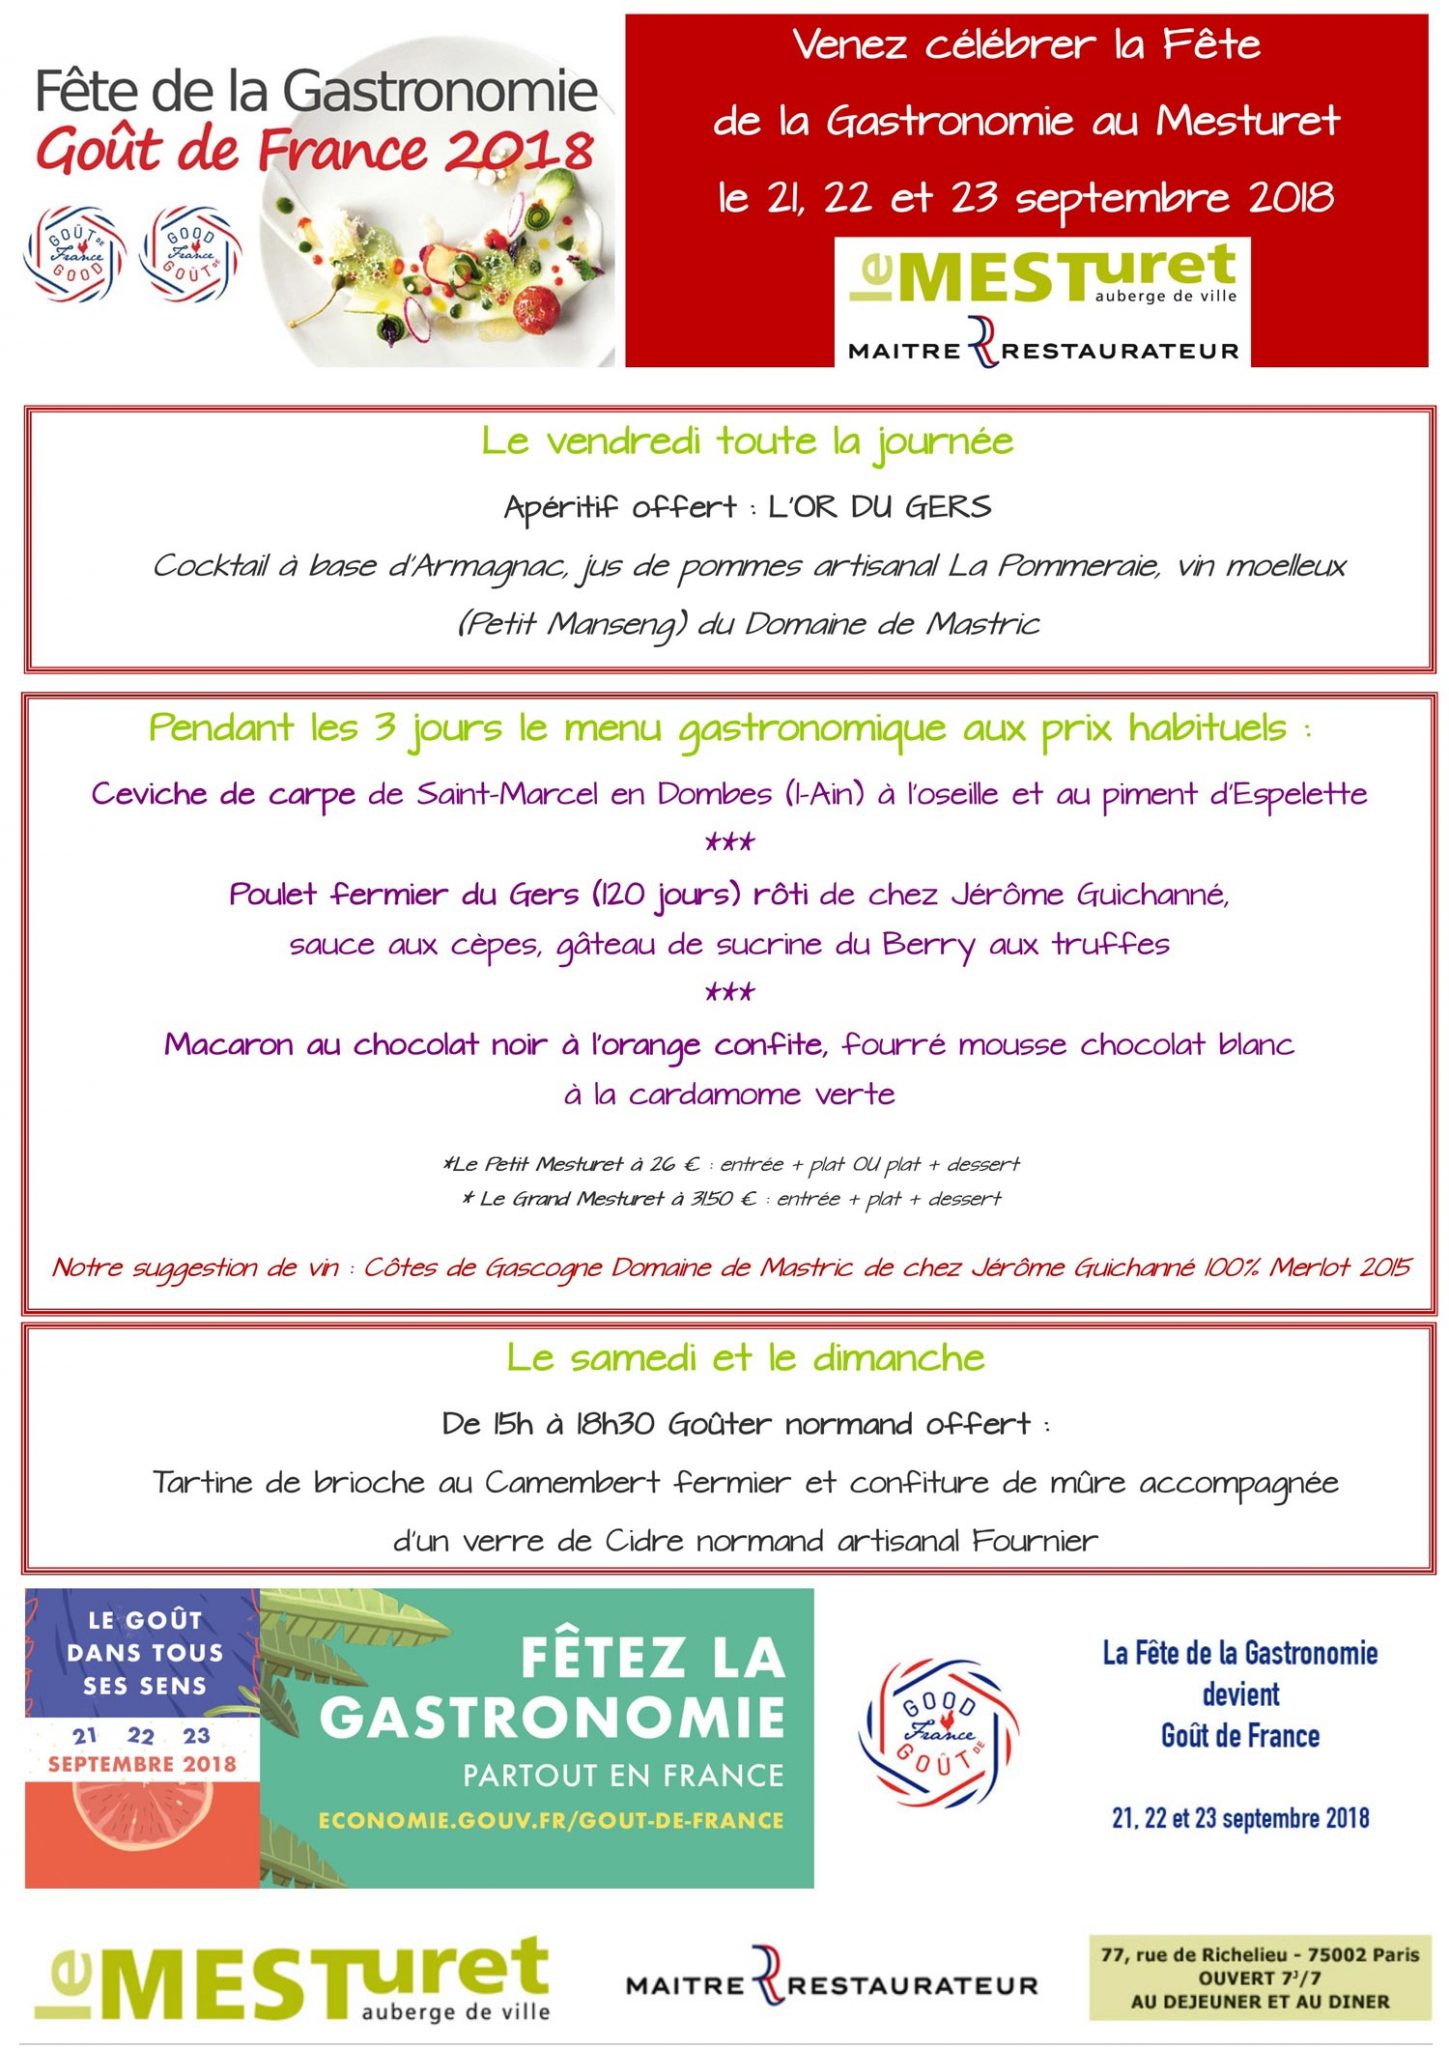 Fête de la Gastronomie Gout de France 2018